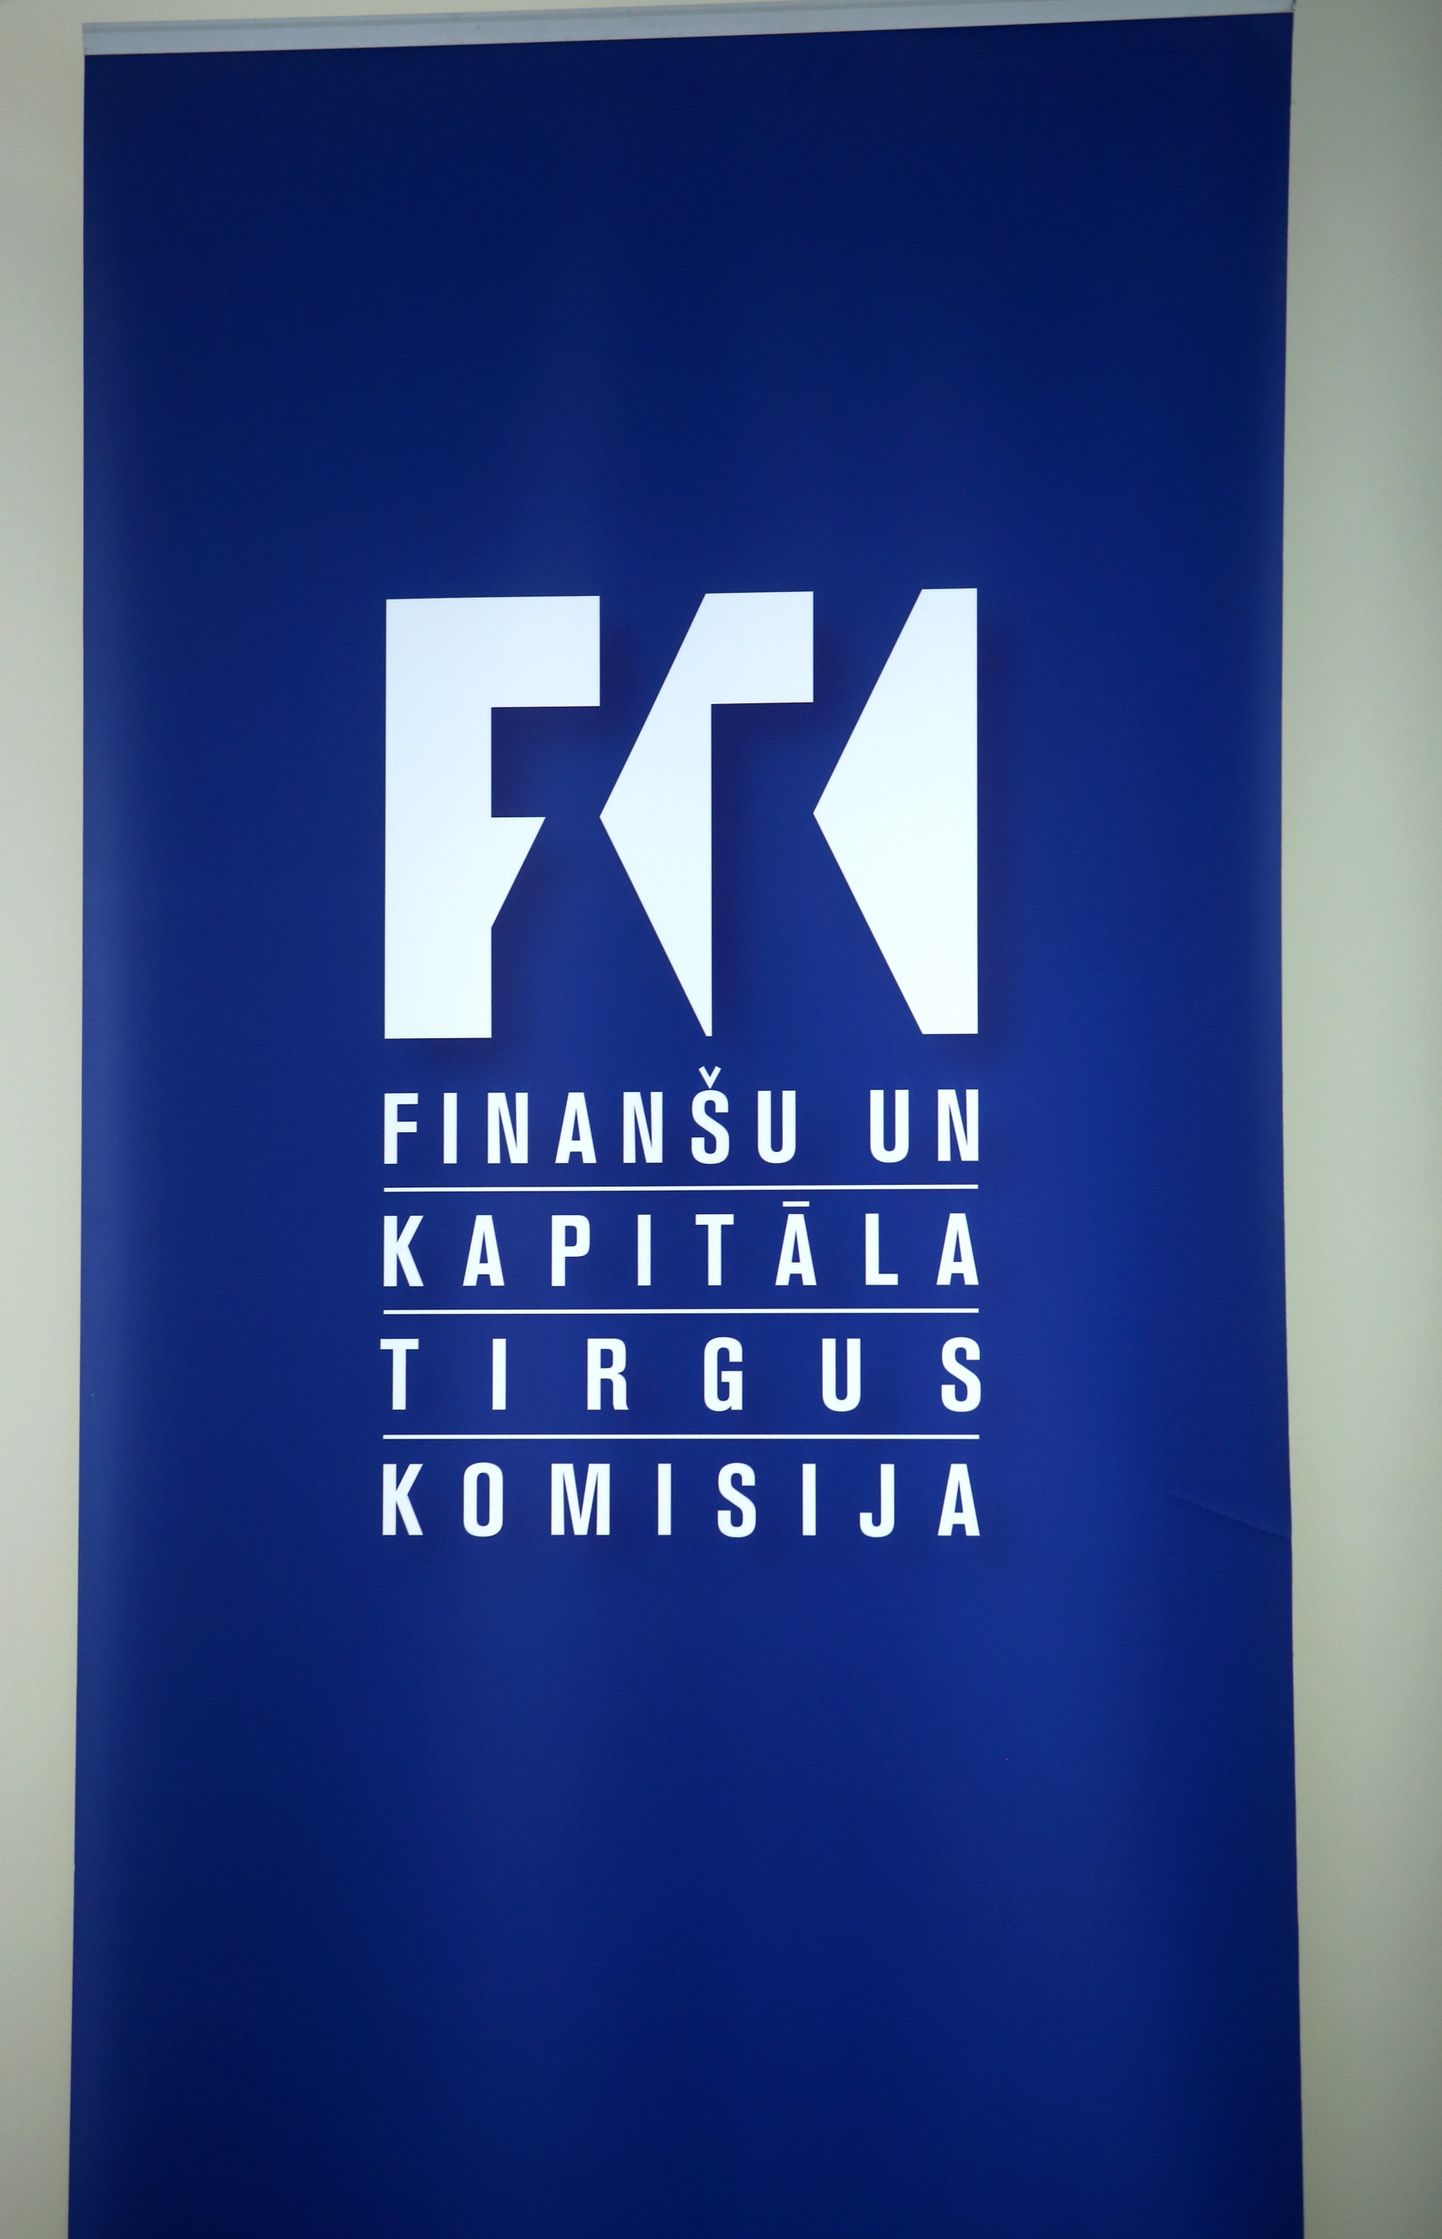 Finanšu un kapitāla tirgus komisijas izkārtne.